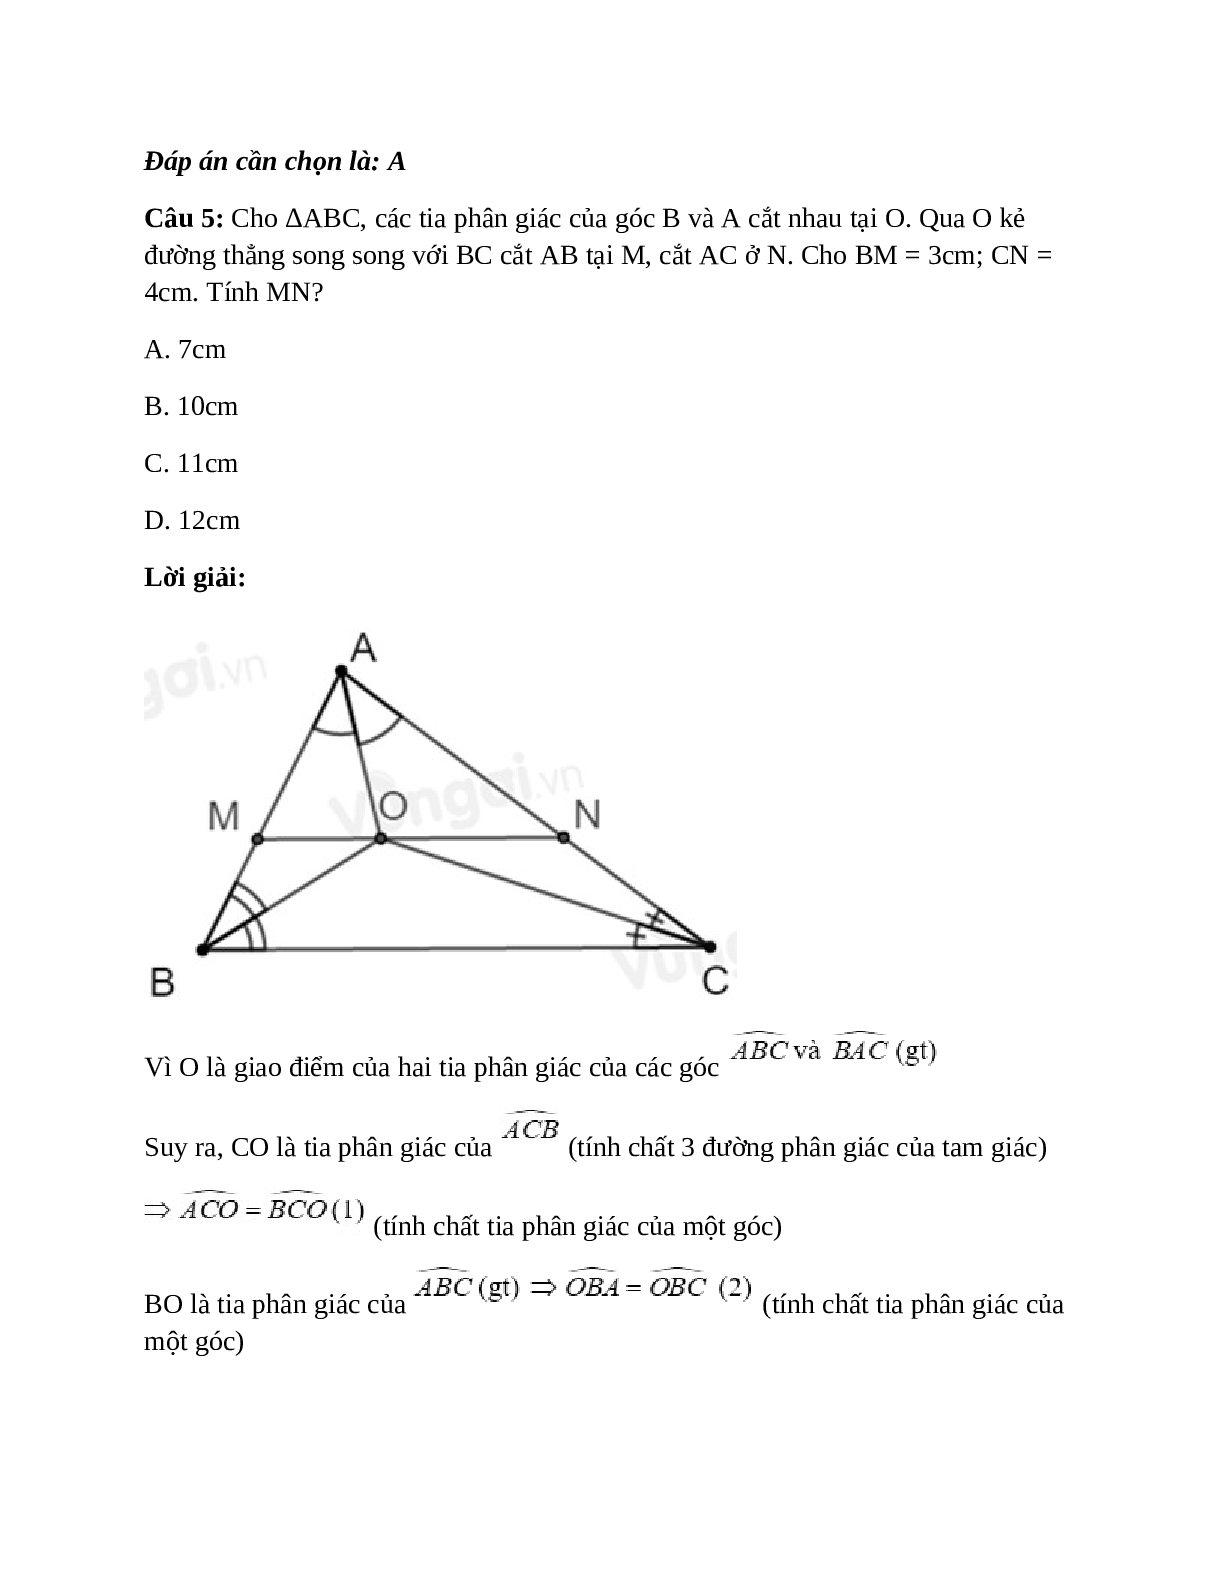 Trắc nghiệm Tính chất ba đường phân giác của tam giác có đáp án – Toán lớp 7 (trang 6)